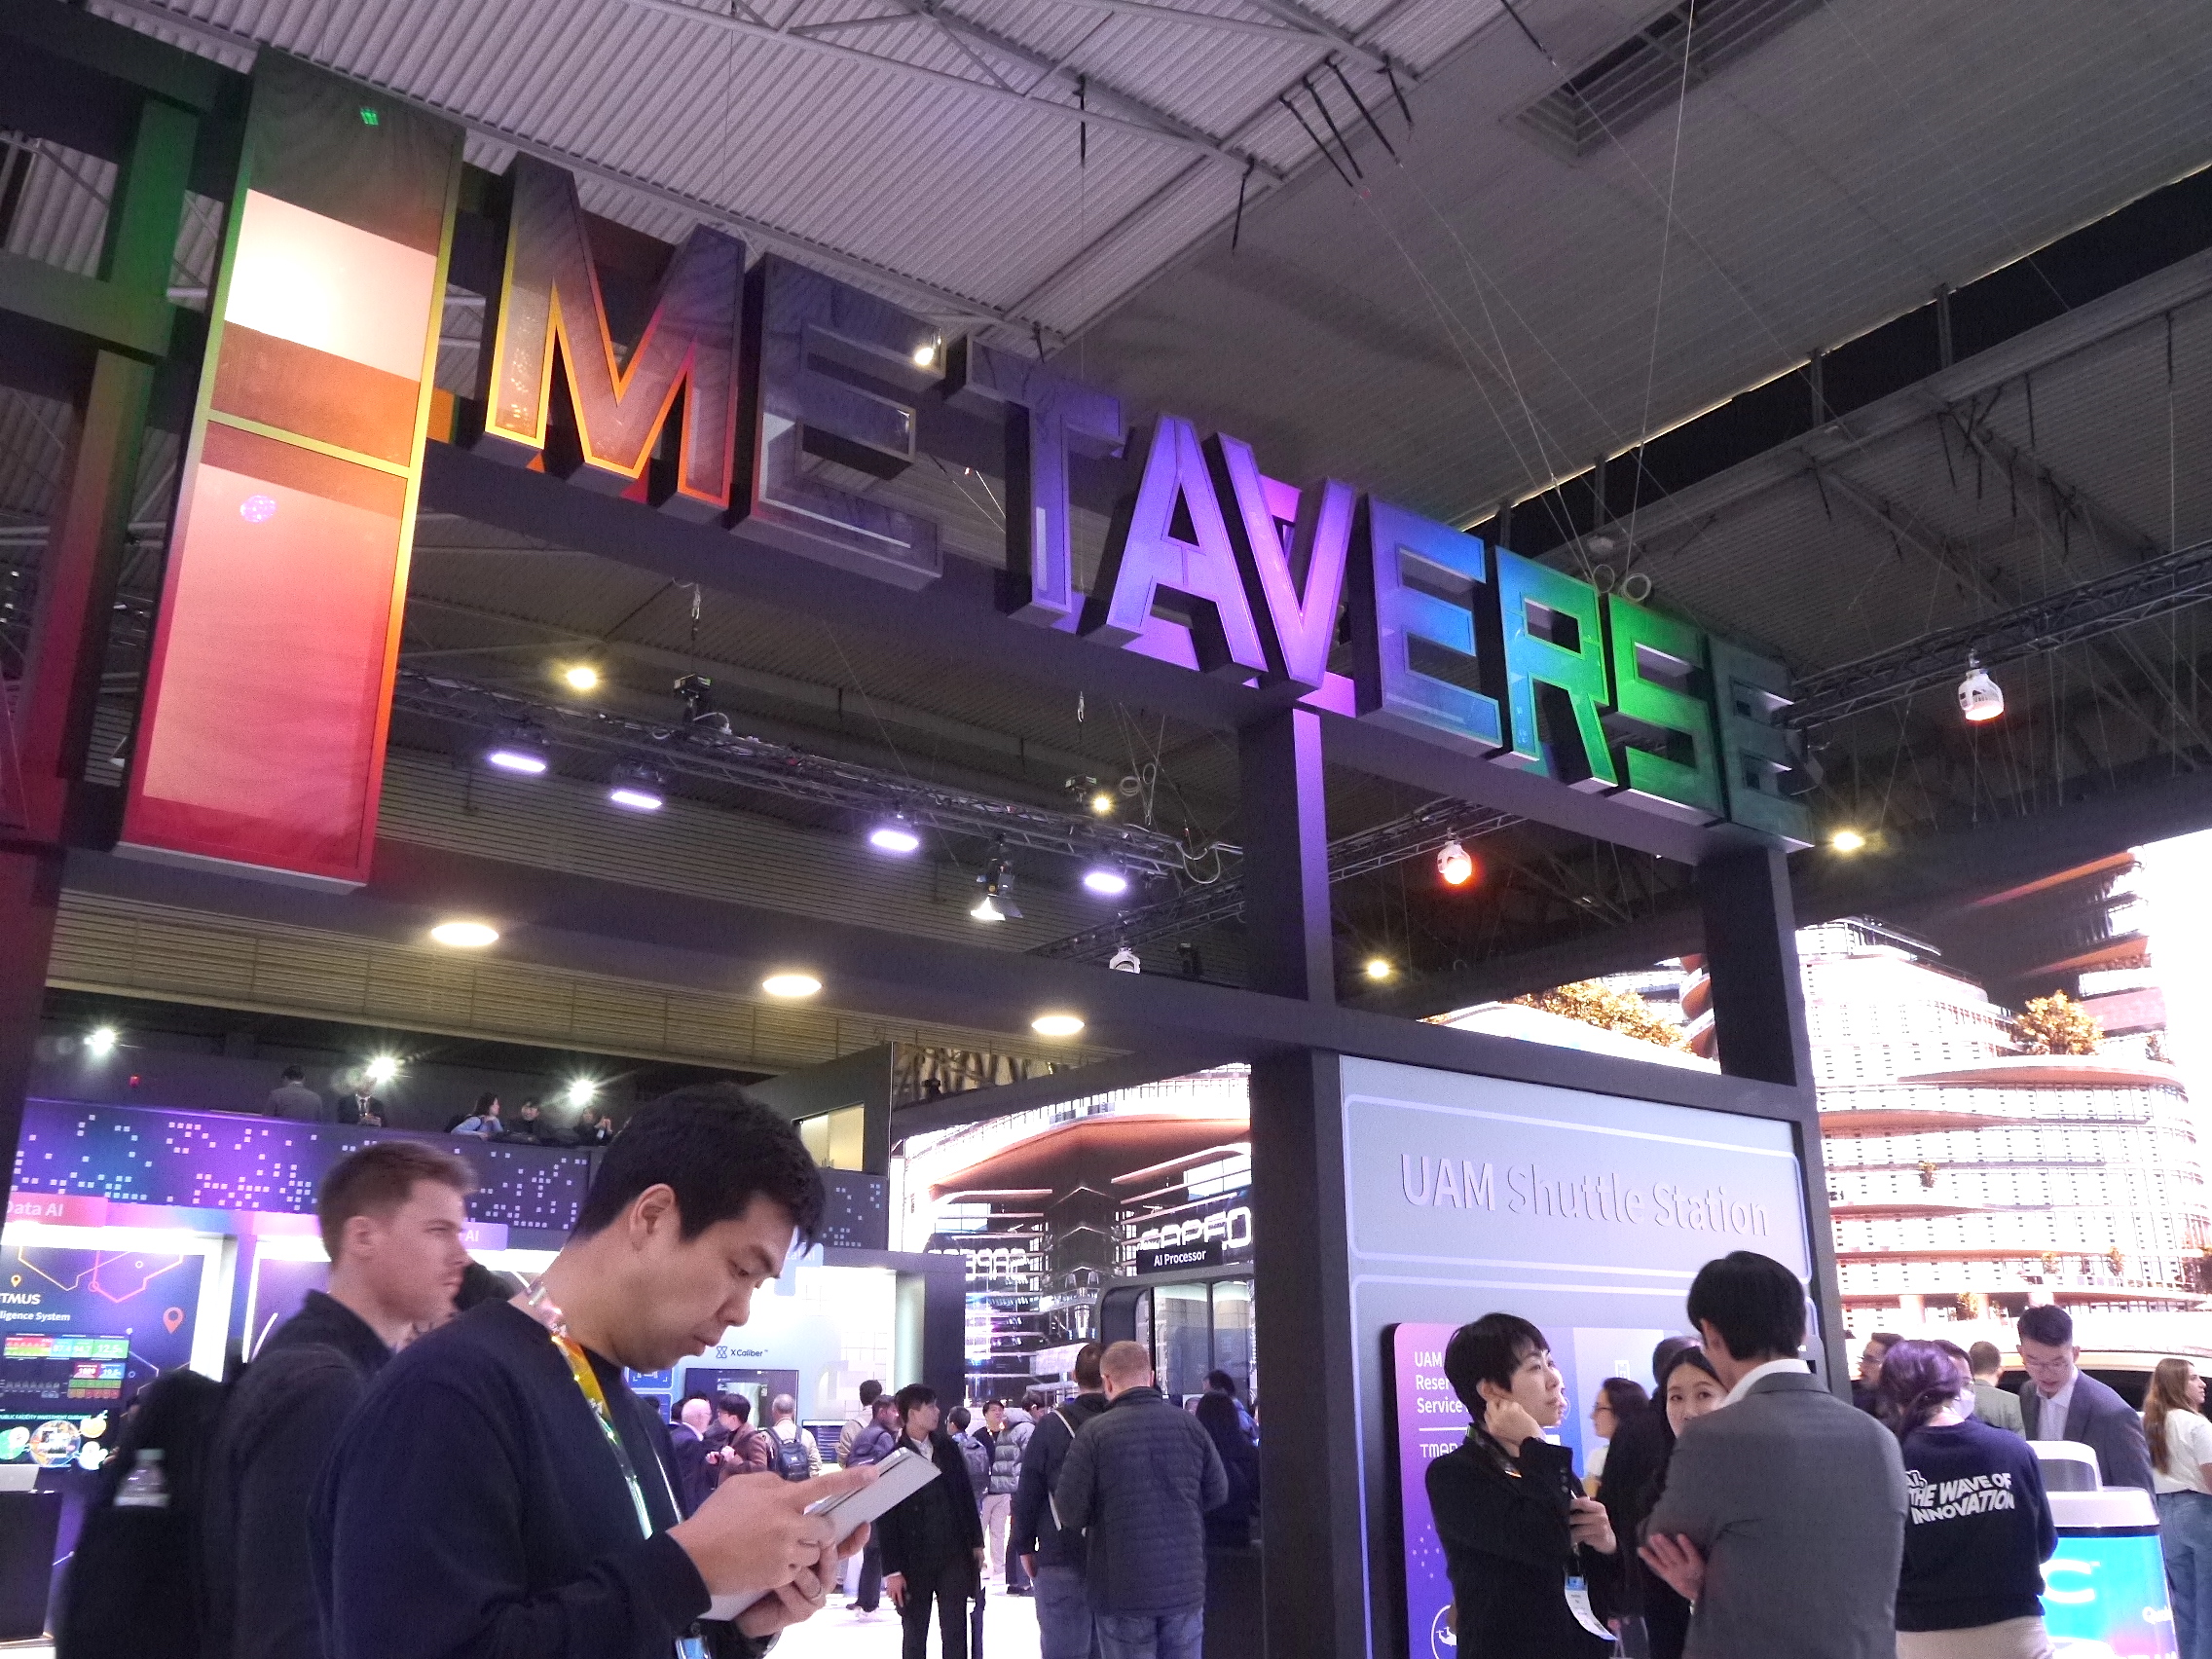 لوگوی رنگارنگ Metaverse در بالای غرفه نمایشگاه تجاری MWC 2023 در بارسلون نشان داده شده است.